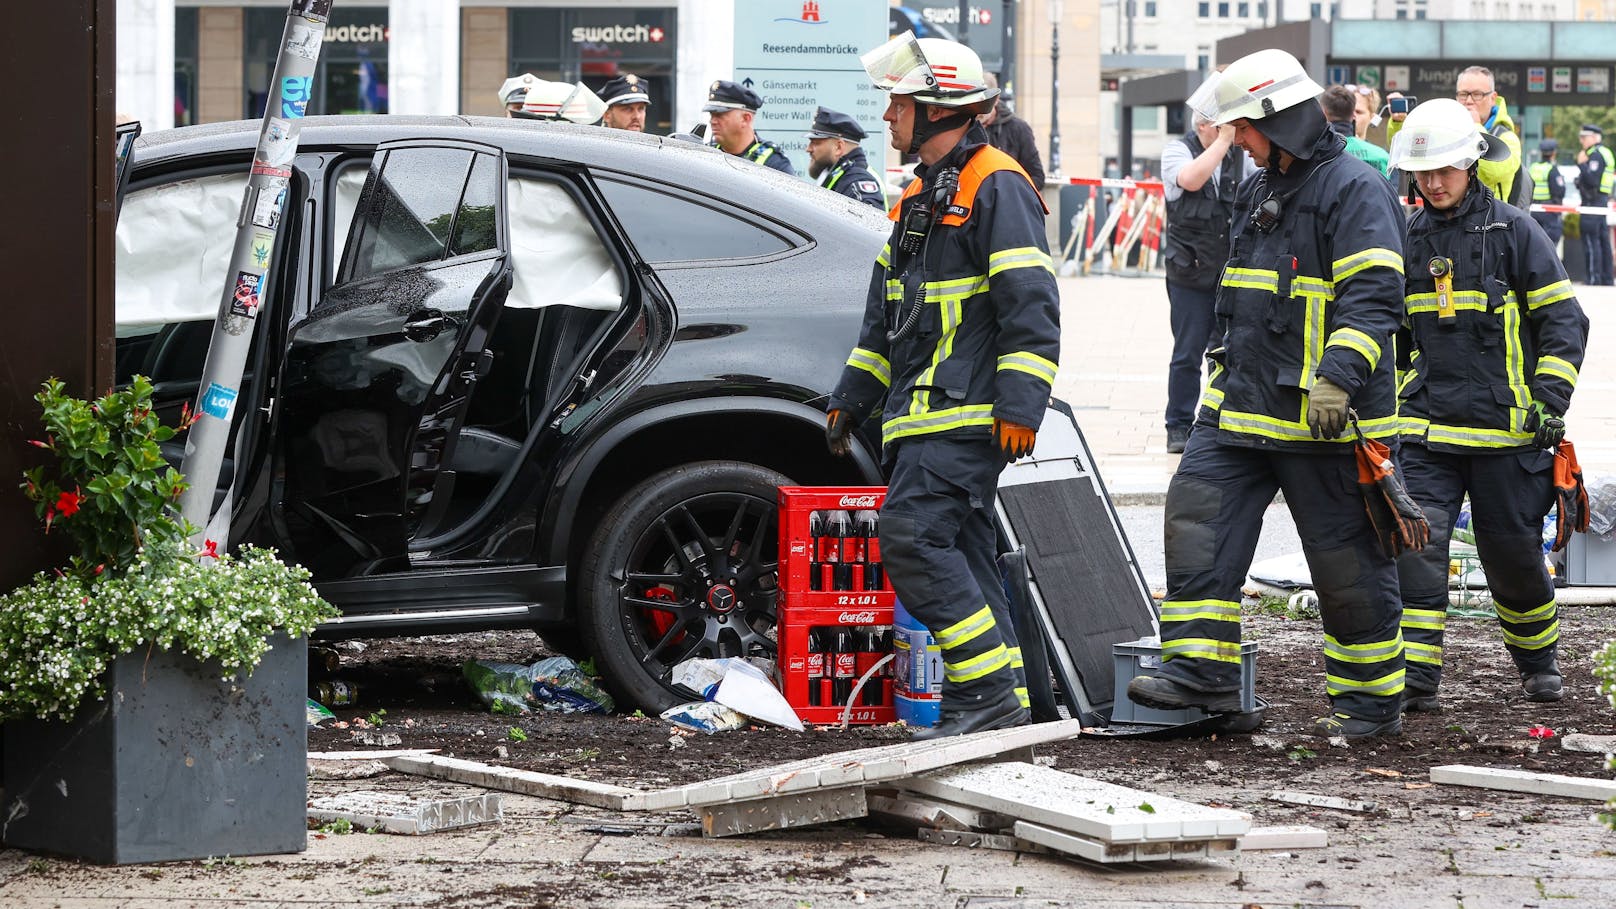 Bei dem Unfall auf dem Hamburger Jungfernstieg wurden mehrere Menschen verletzt.